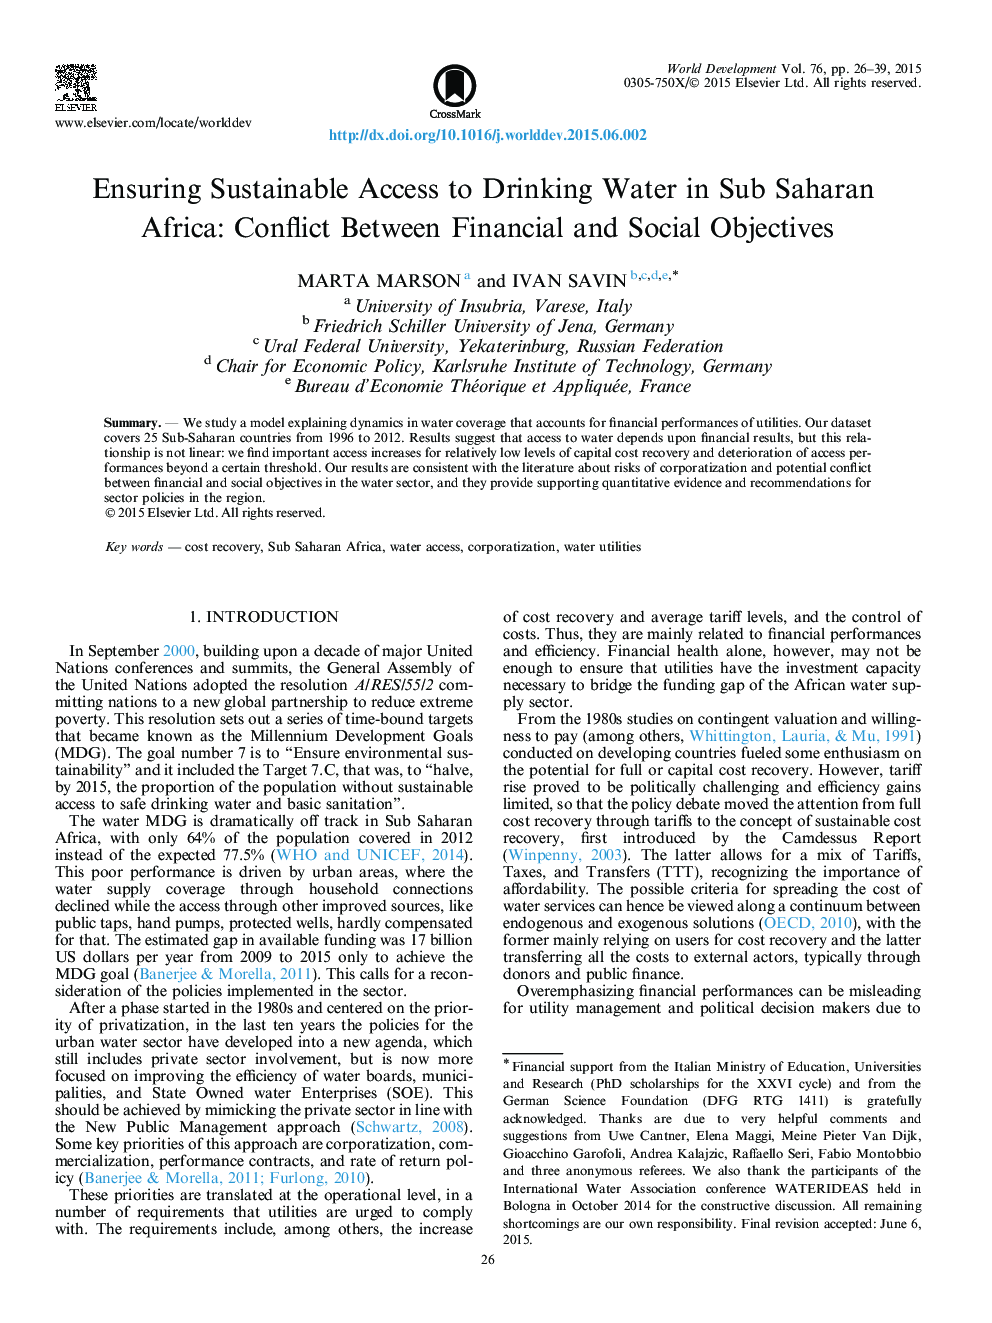 فراهم آوردن دسترسی پایدار به آب آشامیدنی در مناطق جنوب صحرای آفریقا: مناقشه بین اهداف مالی و اجتماعی 